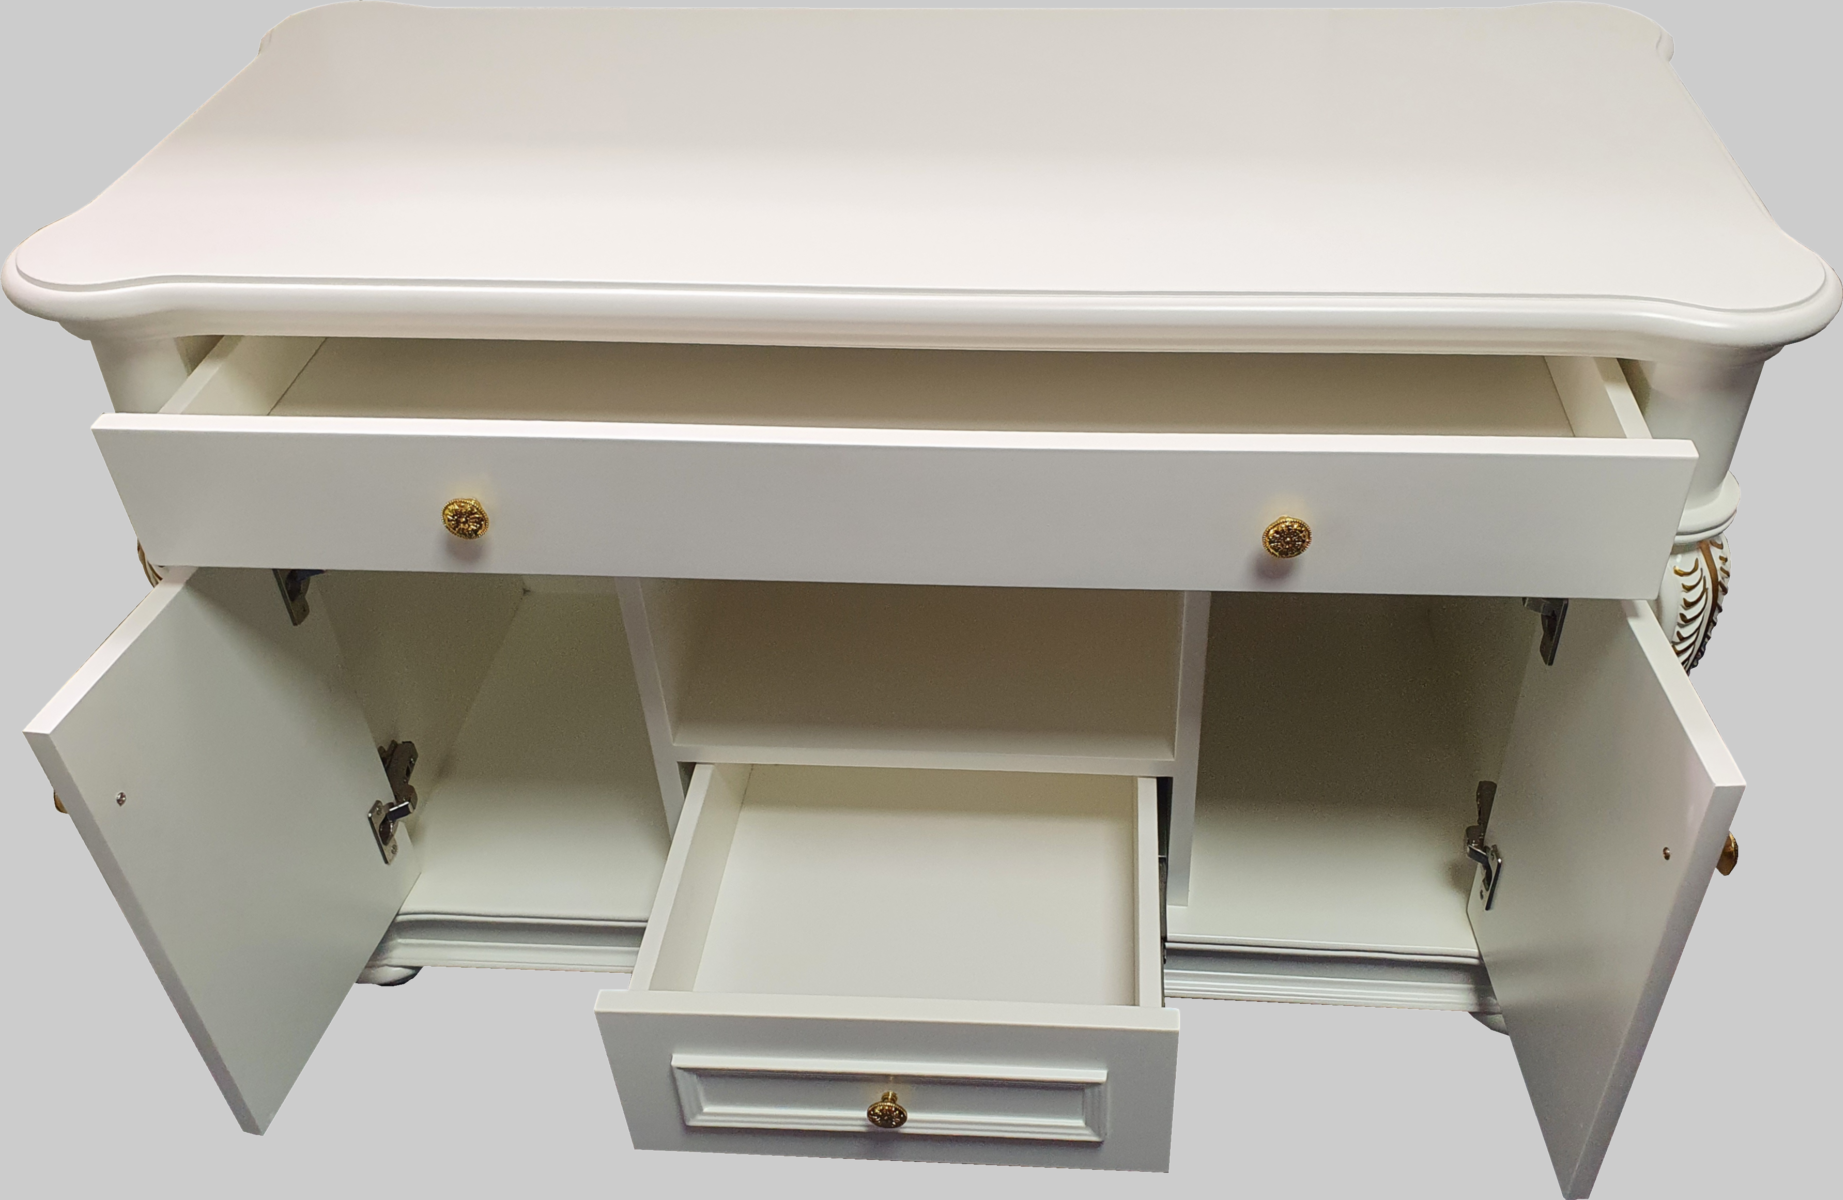 Traditional Luxury White Executive Storage Unit - 0819-ST